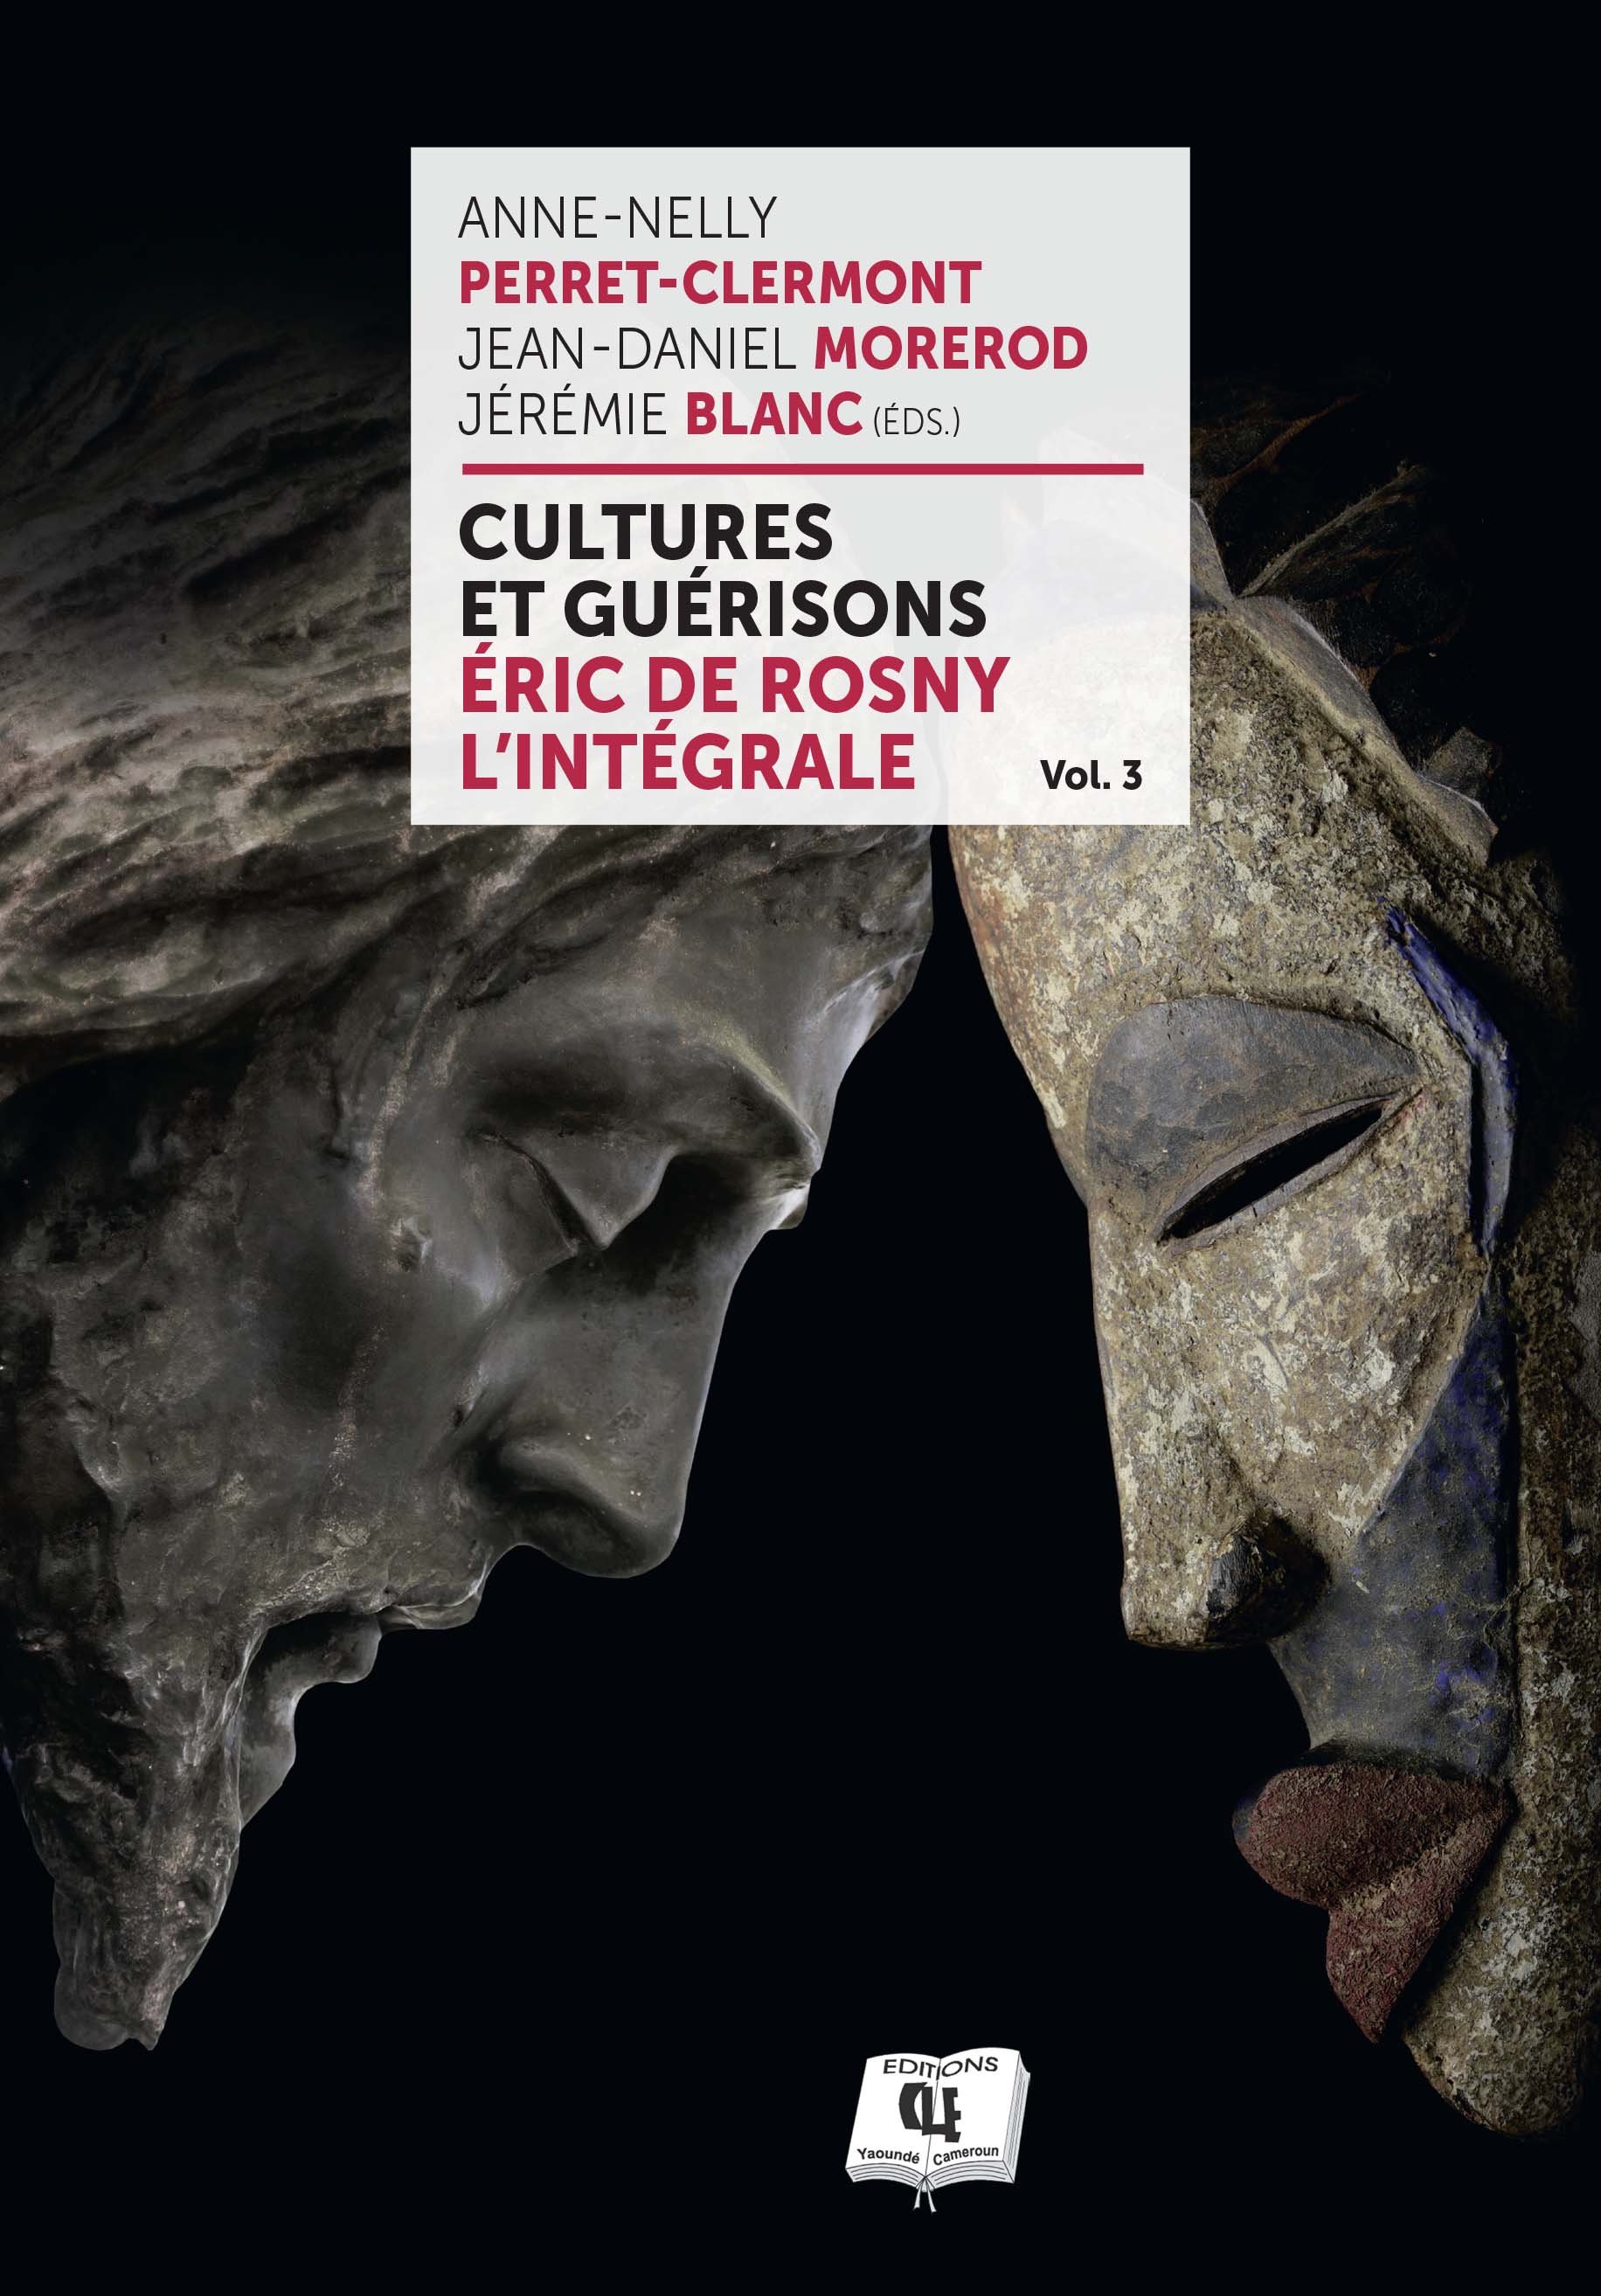 Cultures et guérisons (Volume III)